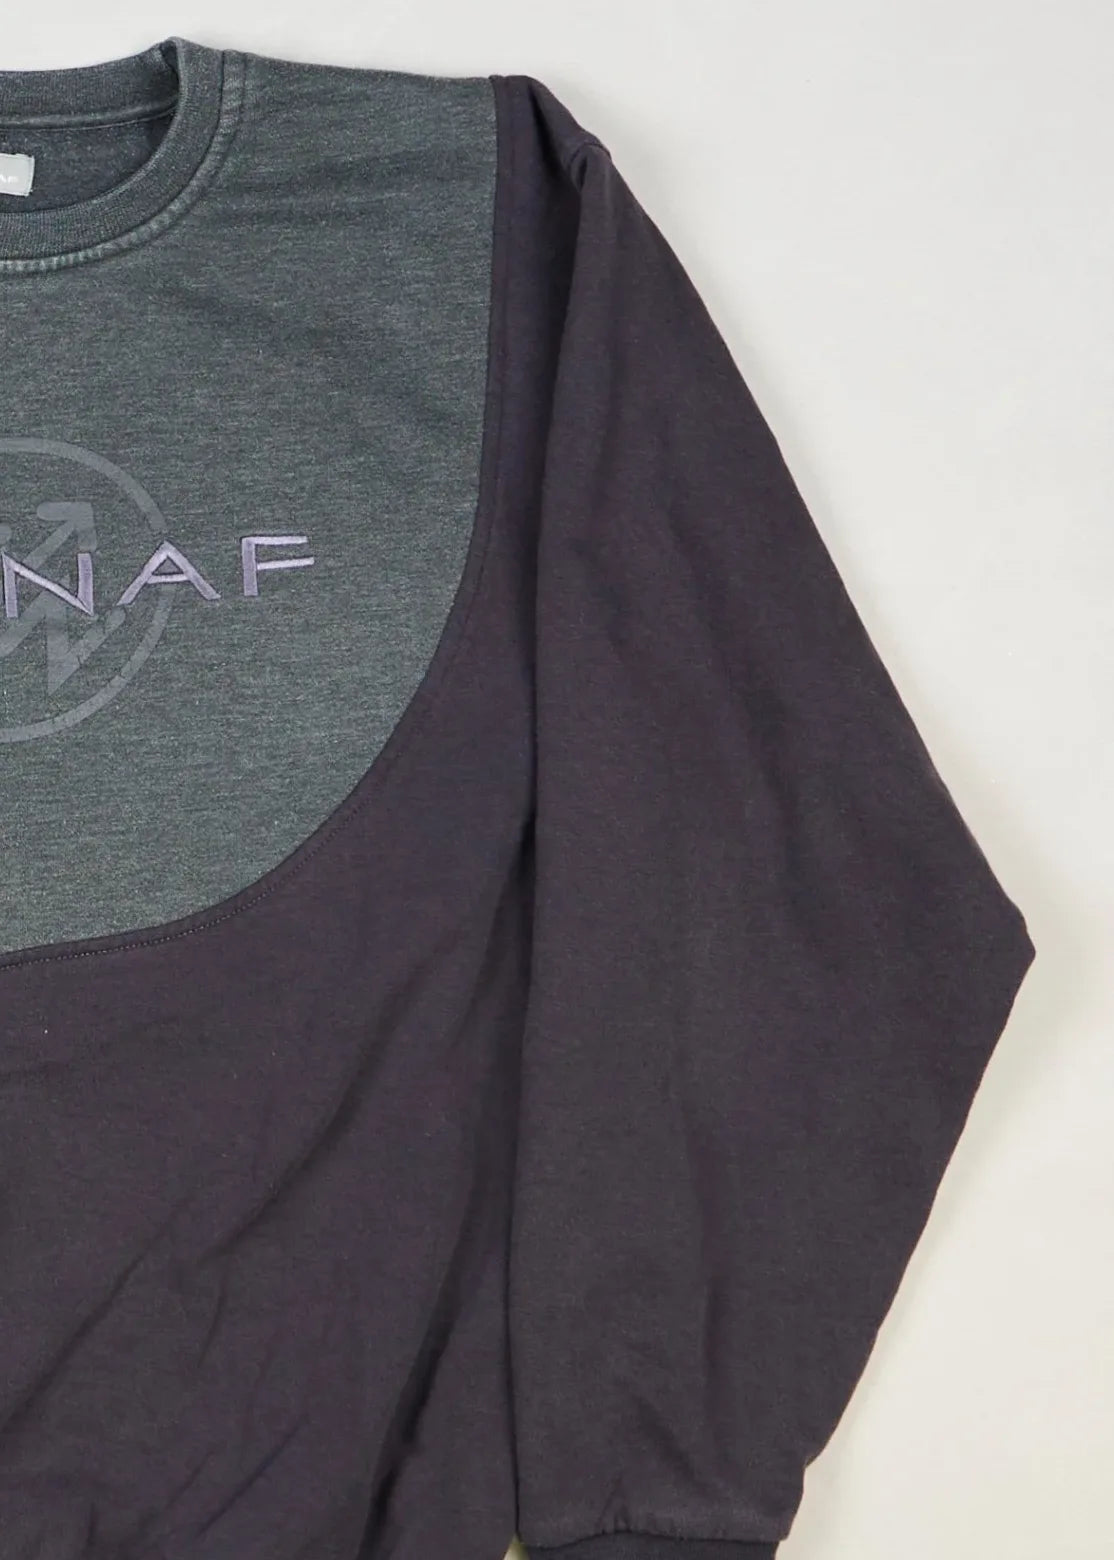 NAFNAF - Sweatshirt (M) Right